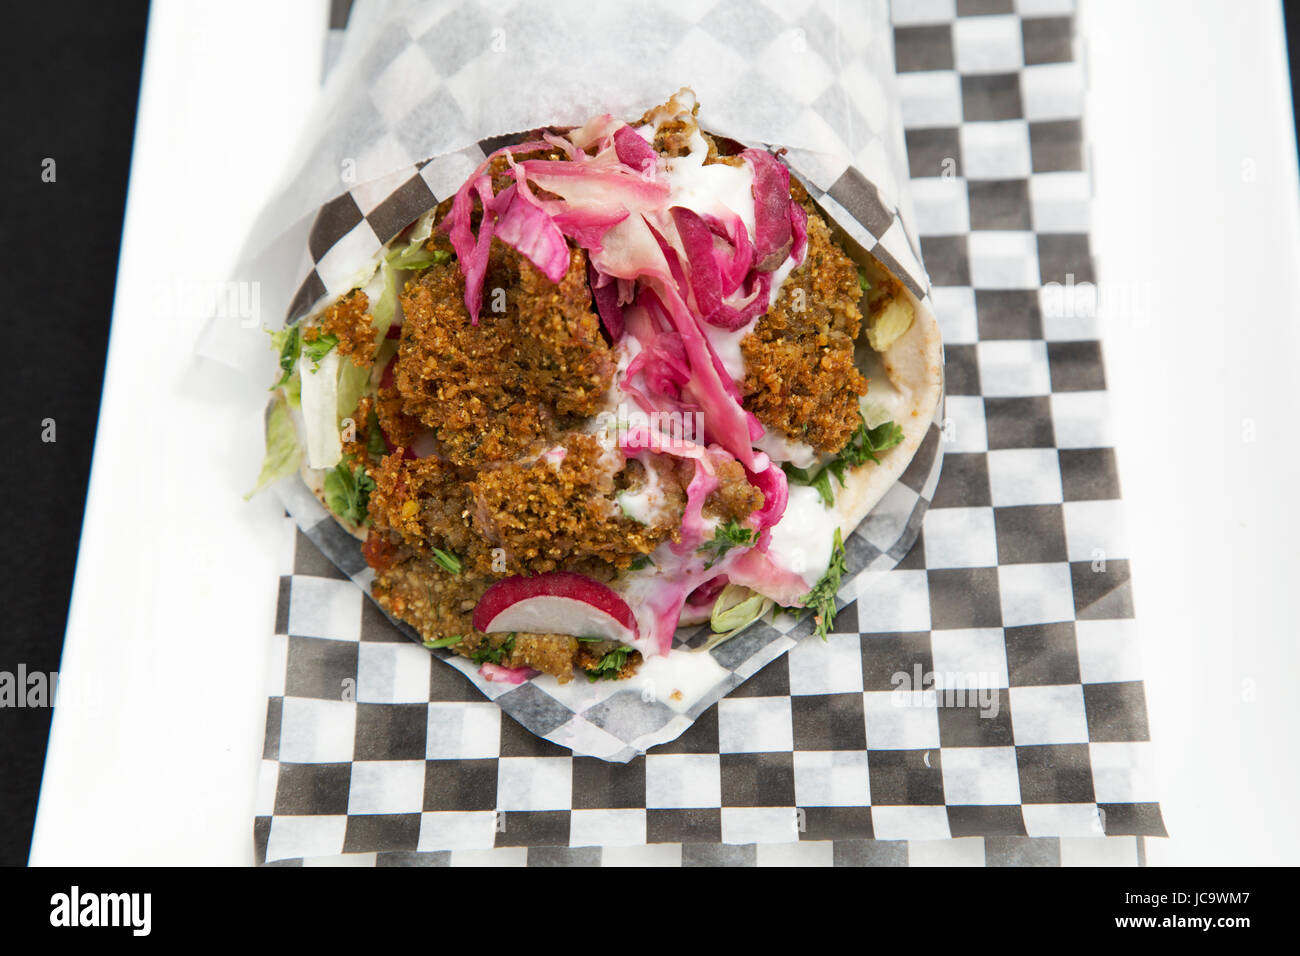 Un falafel wrap est servi à Calgary, Canada. L'immigration et des influences mondiales signifie une large variété de plats sont servis dans les grandes villes. Banque D'Images